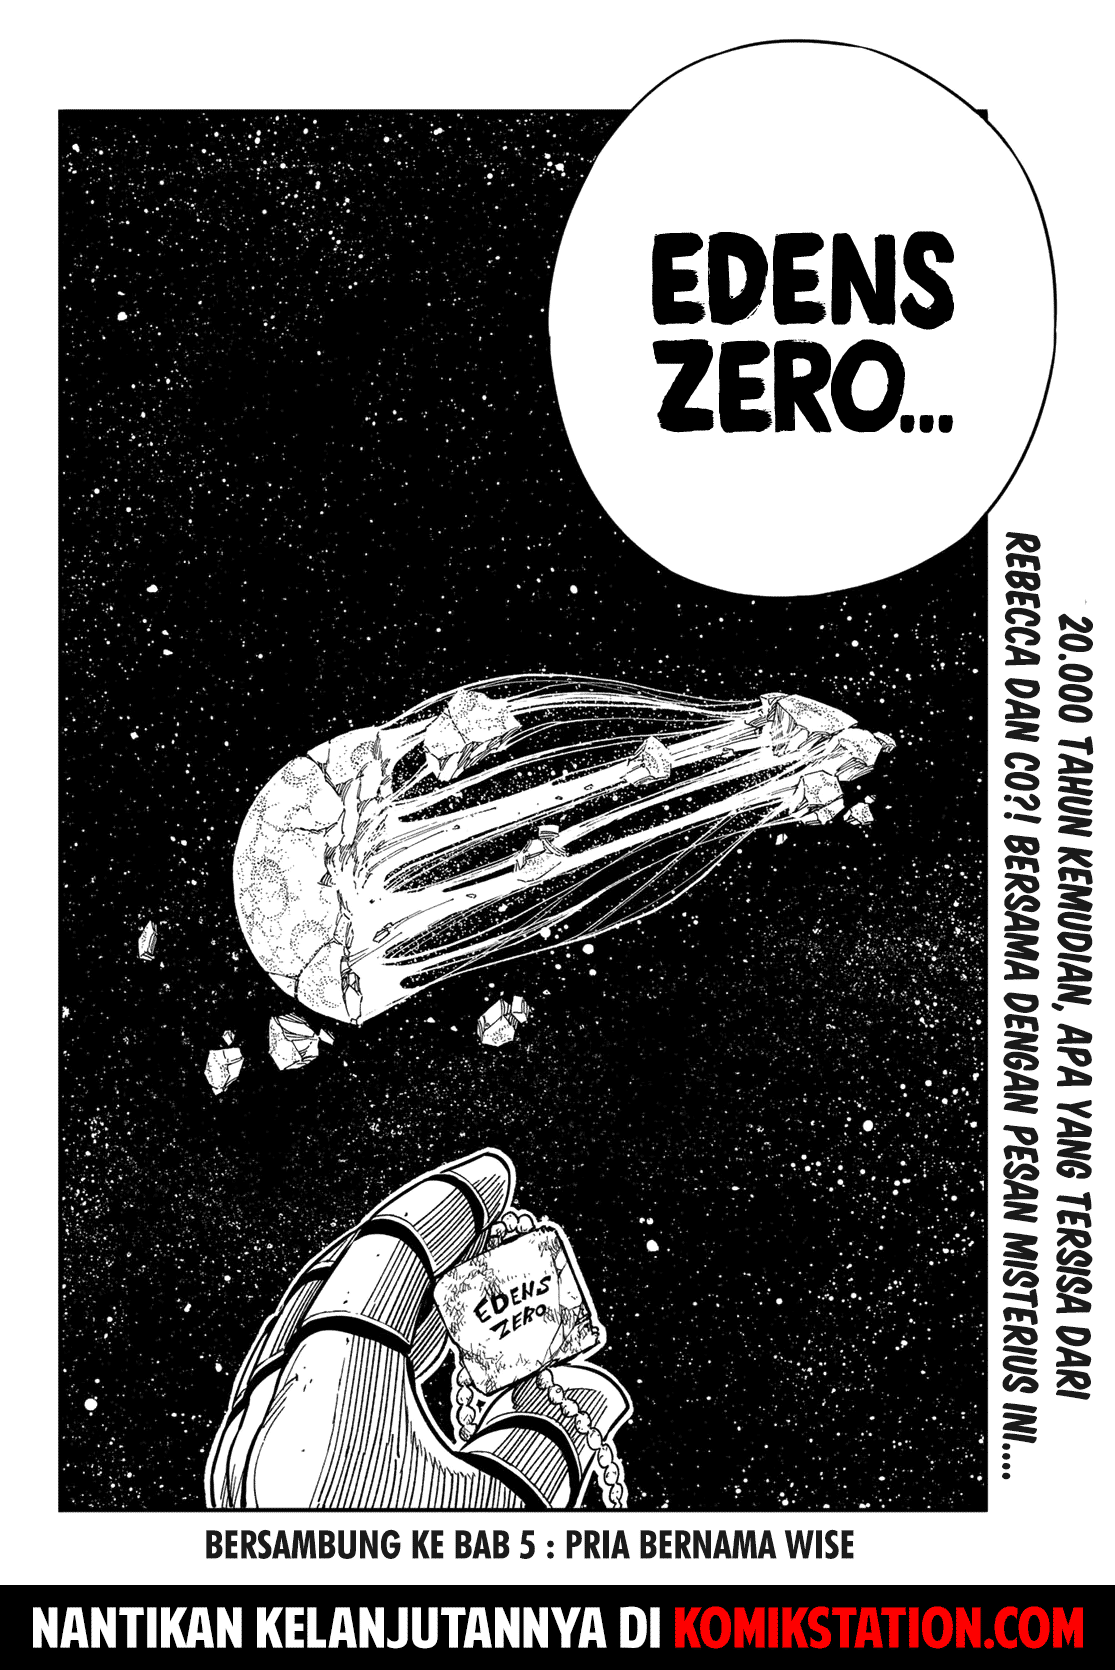 Eden’s Zero Chapter 4